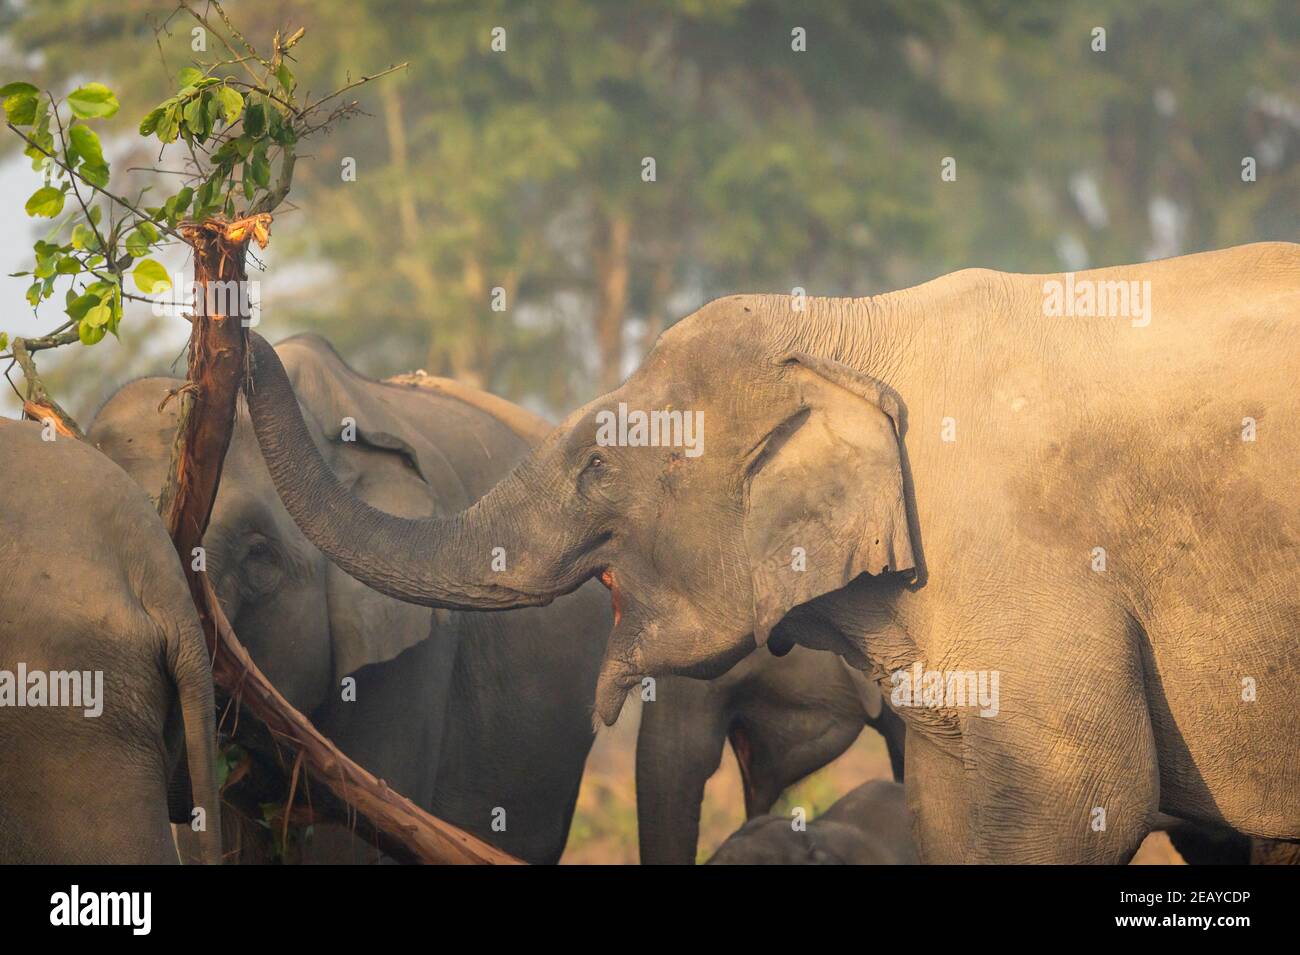 elefante asiatico selvaggio mangiare corteccia di albero nella zona di dhikala Del parco nazionale di jim corbett uttarakhand india - Elephas maximus indicus Foto Stock